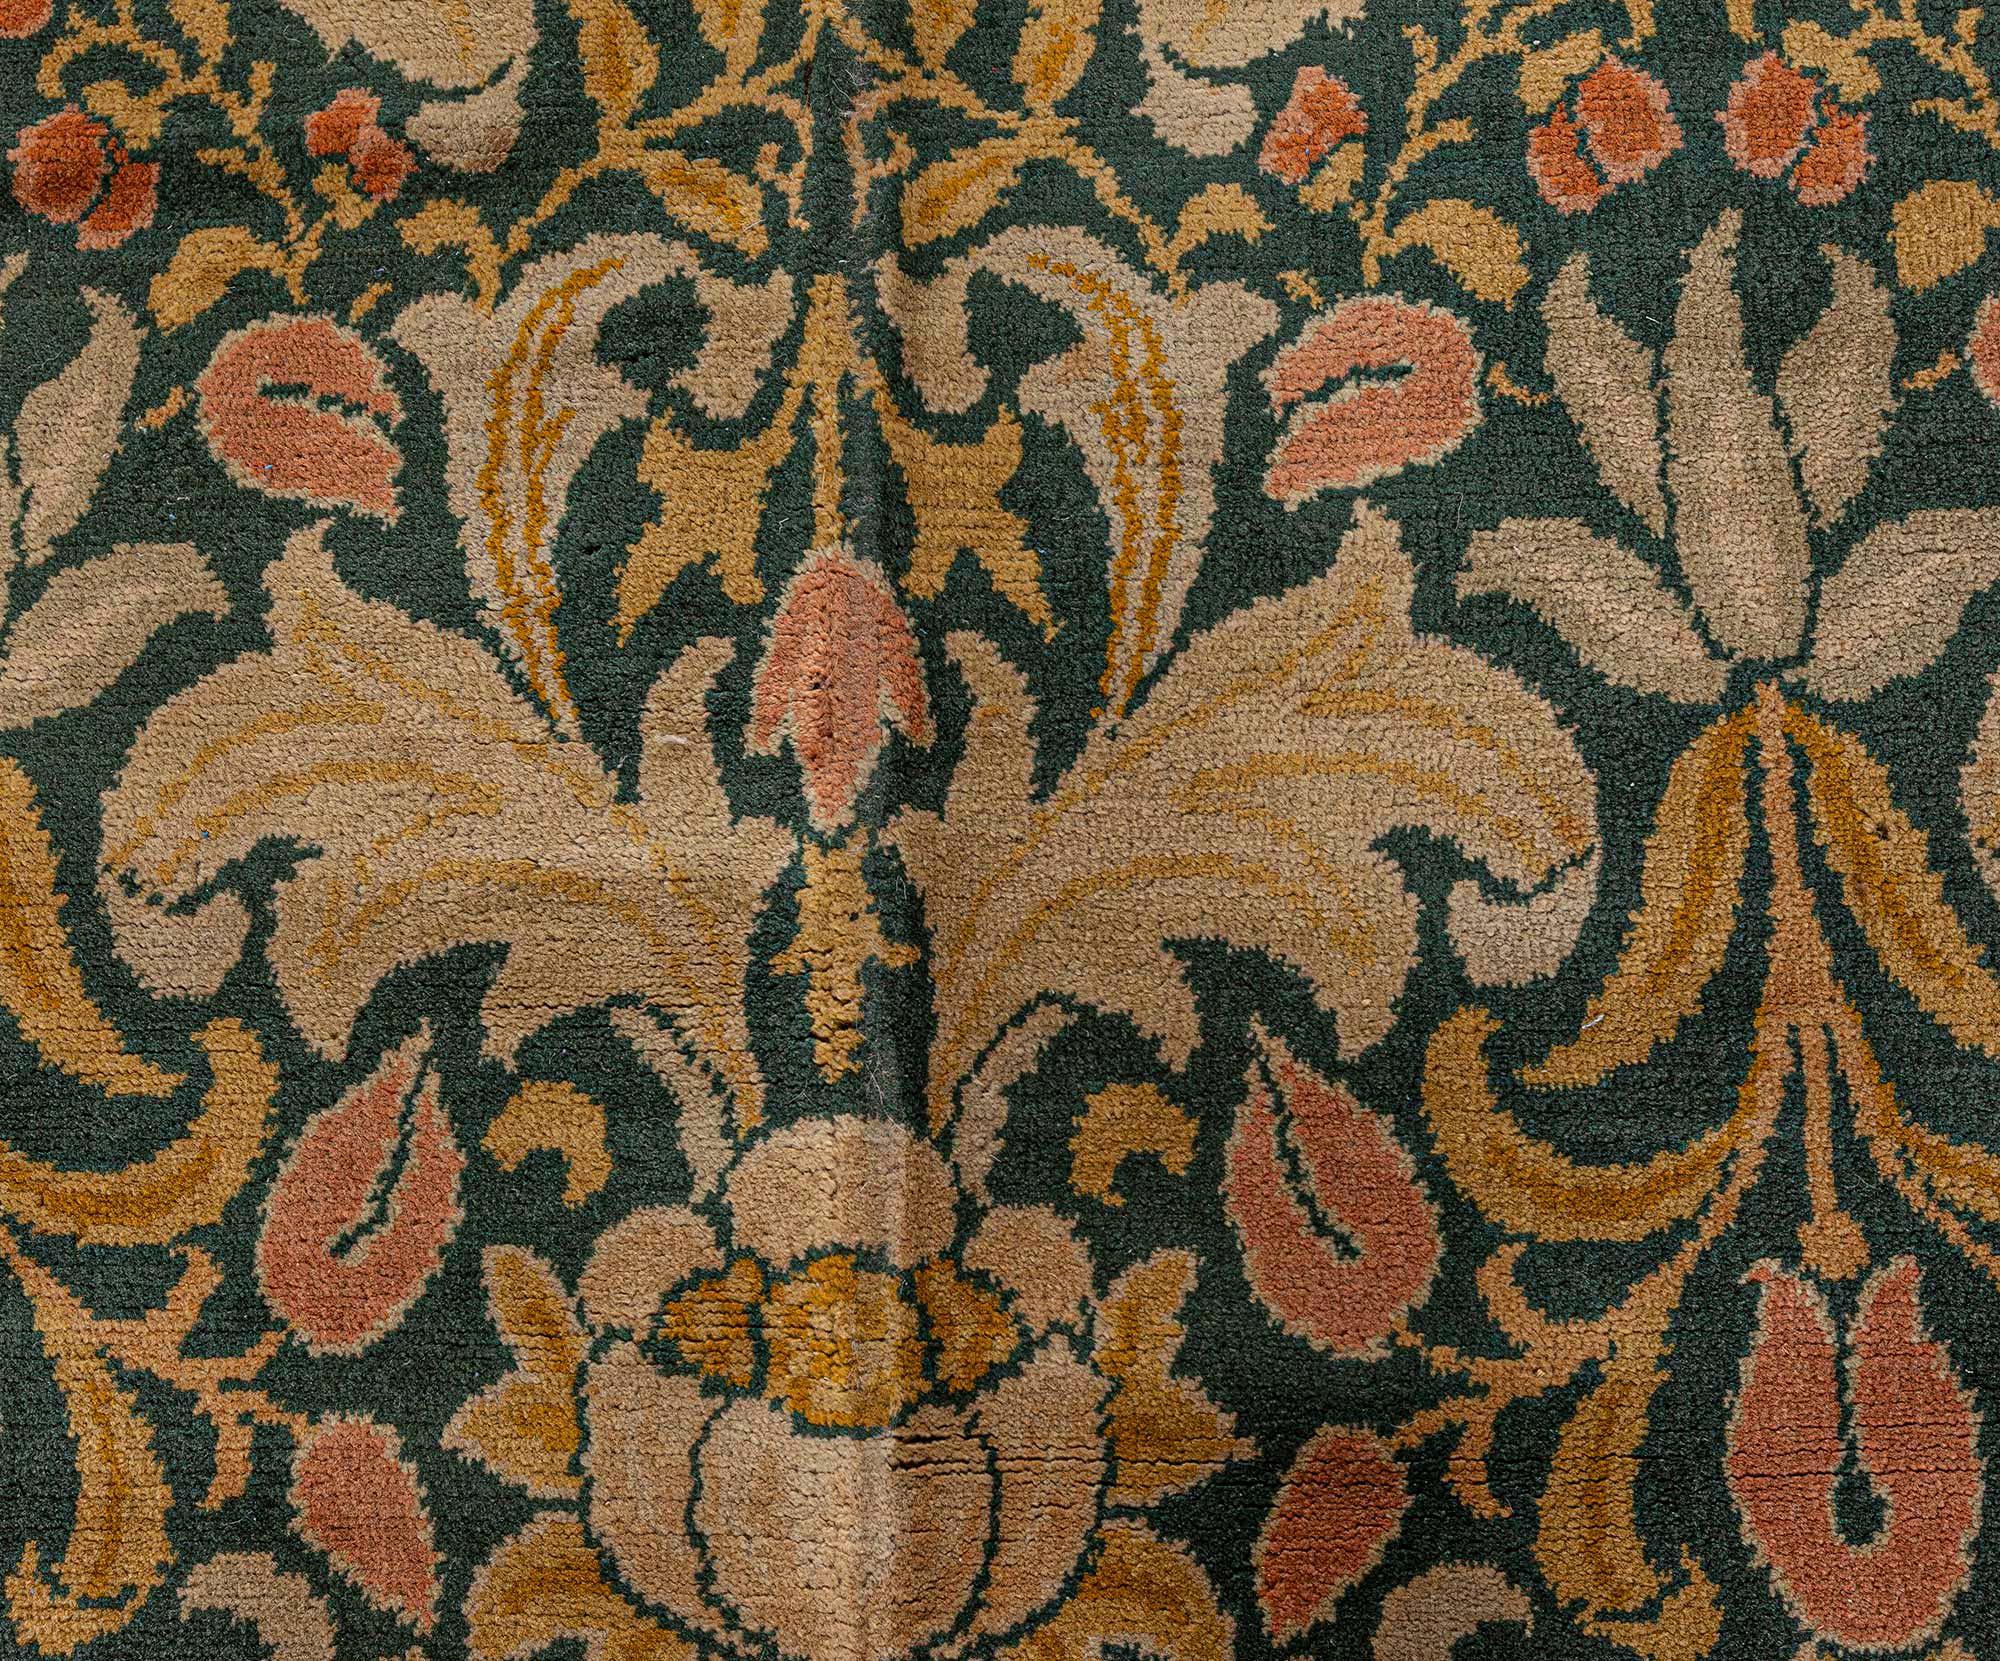 William Morris Maschinengefertigter englischer Teppich, um 1920
Größe: 12'7